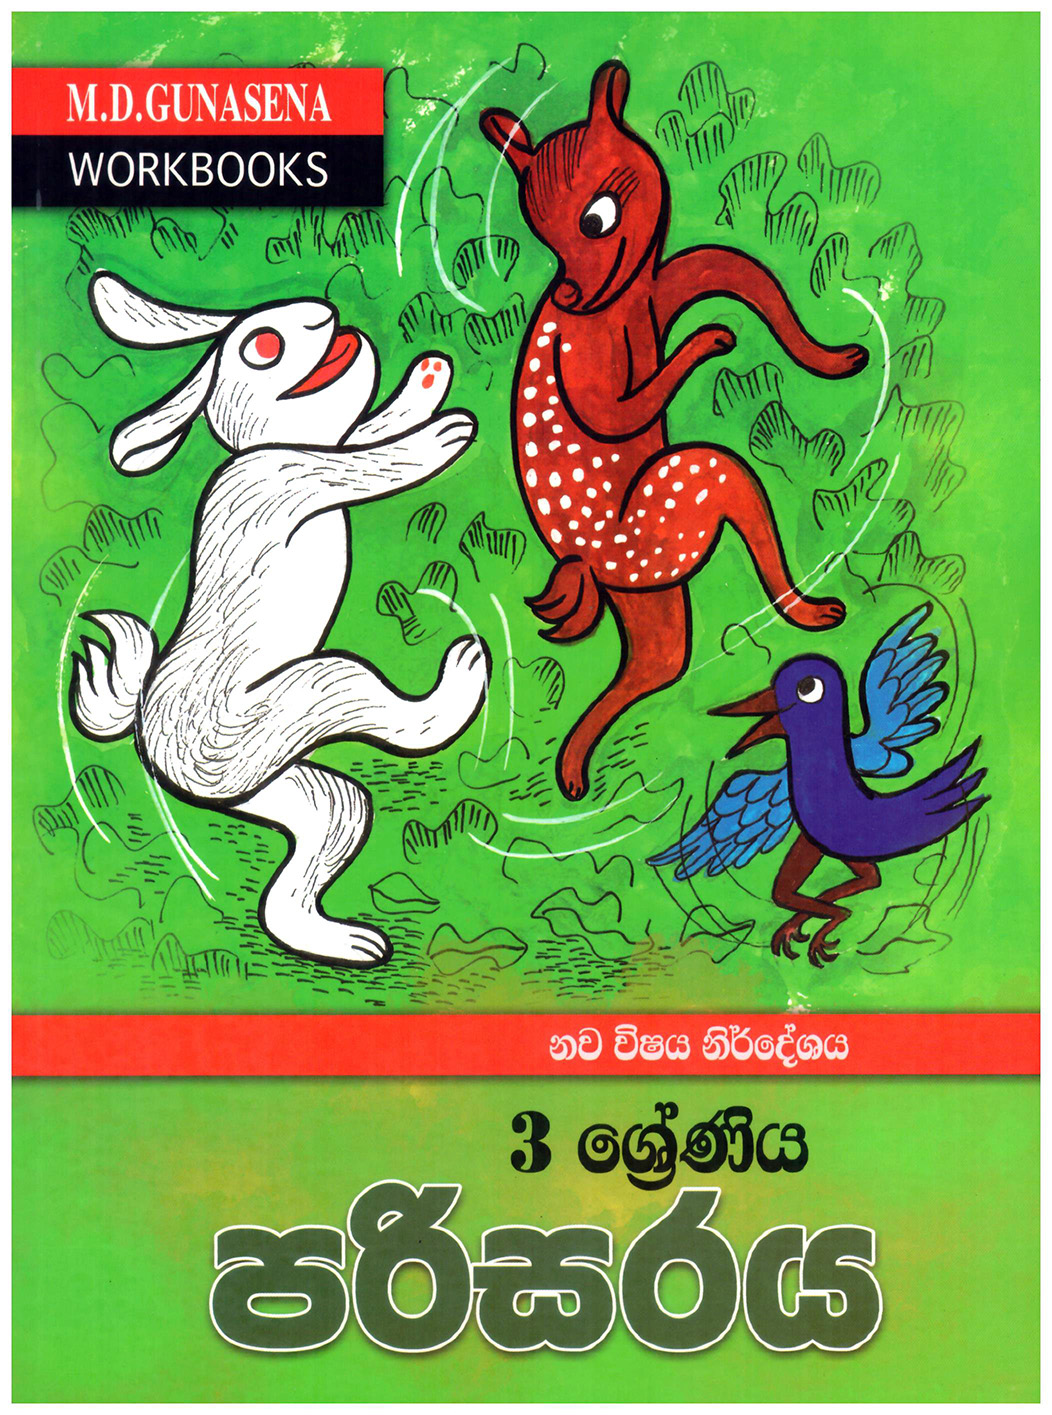 M.D. Gunasena Workbooks : Parisaraya 3 Shreniya 